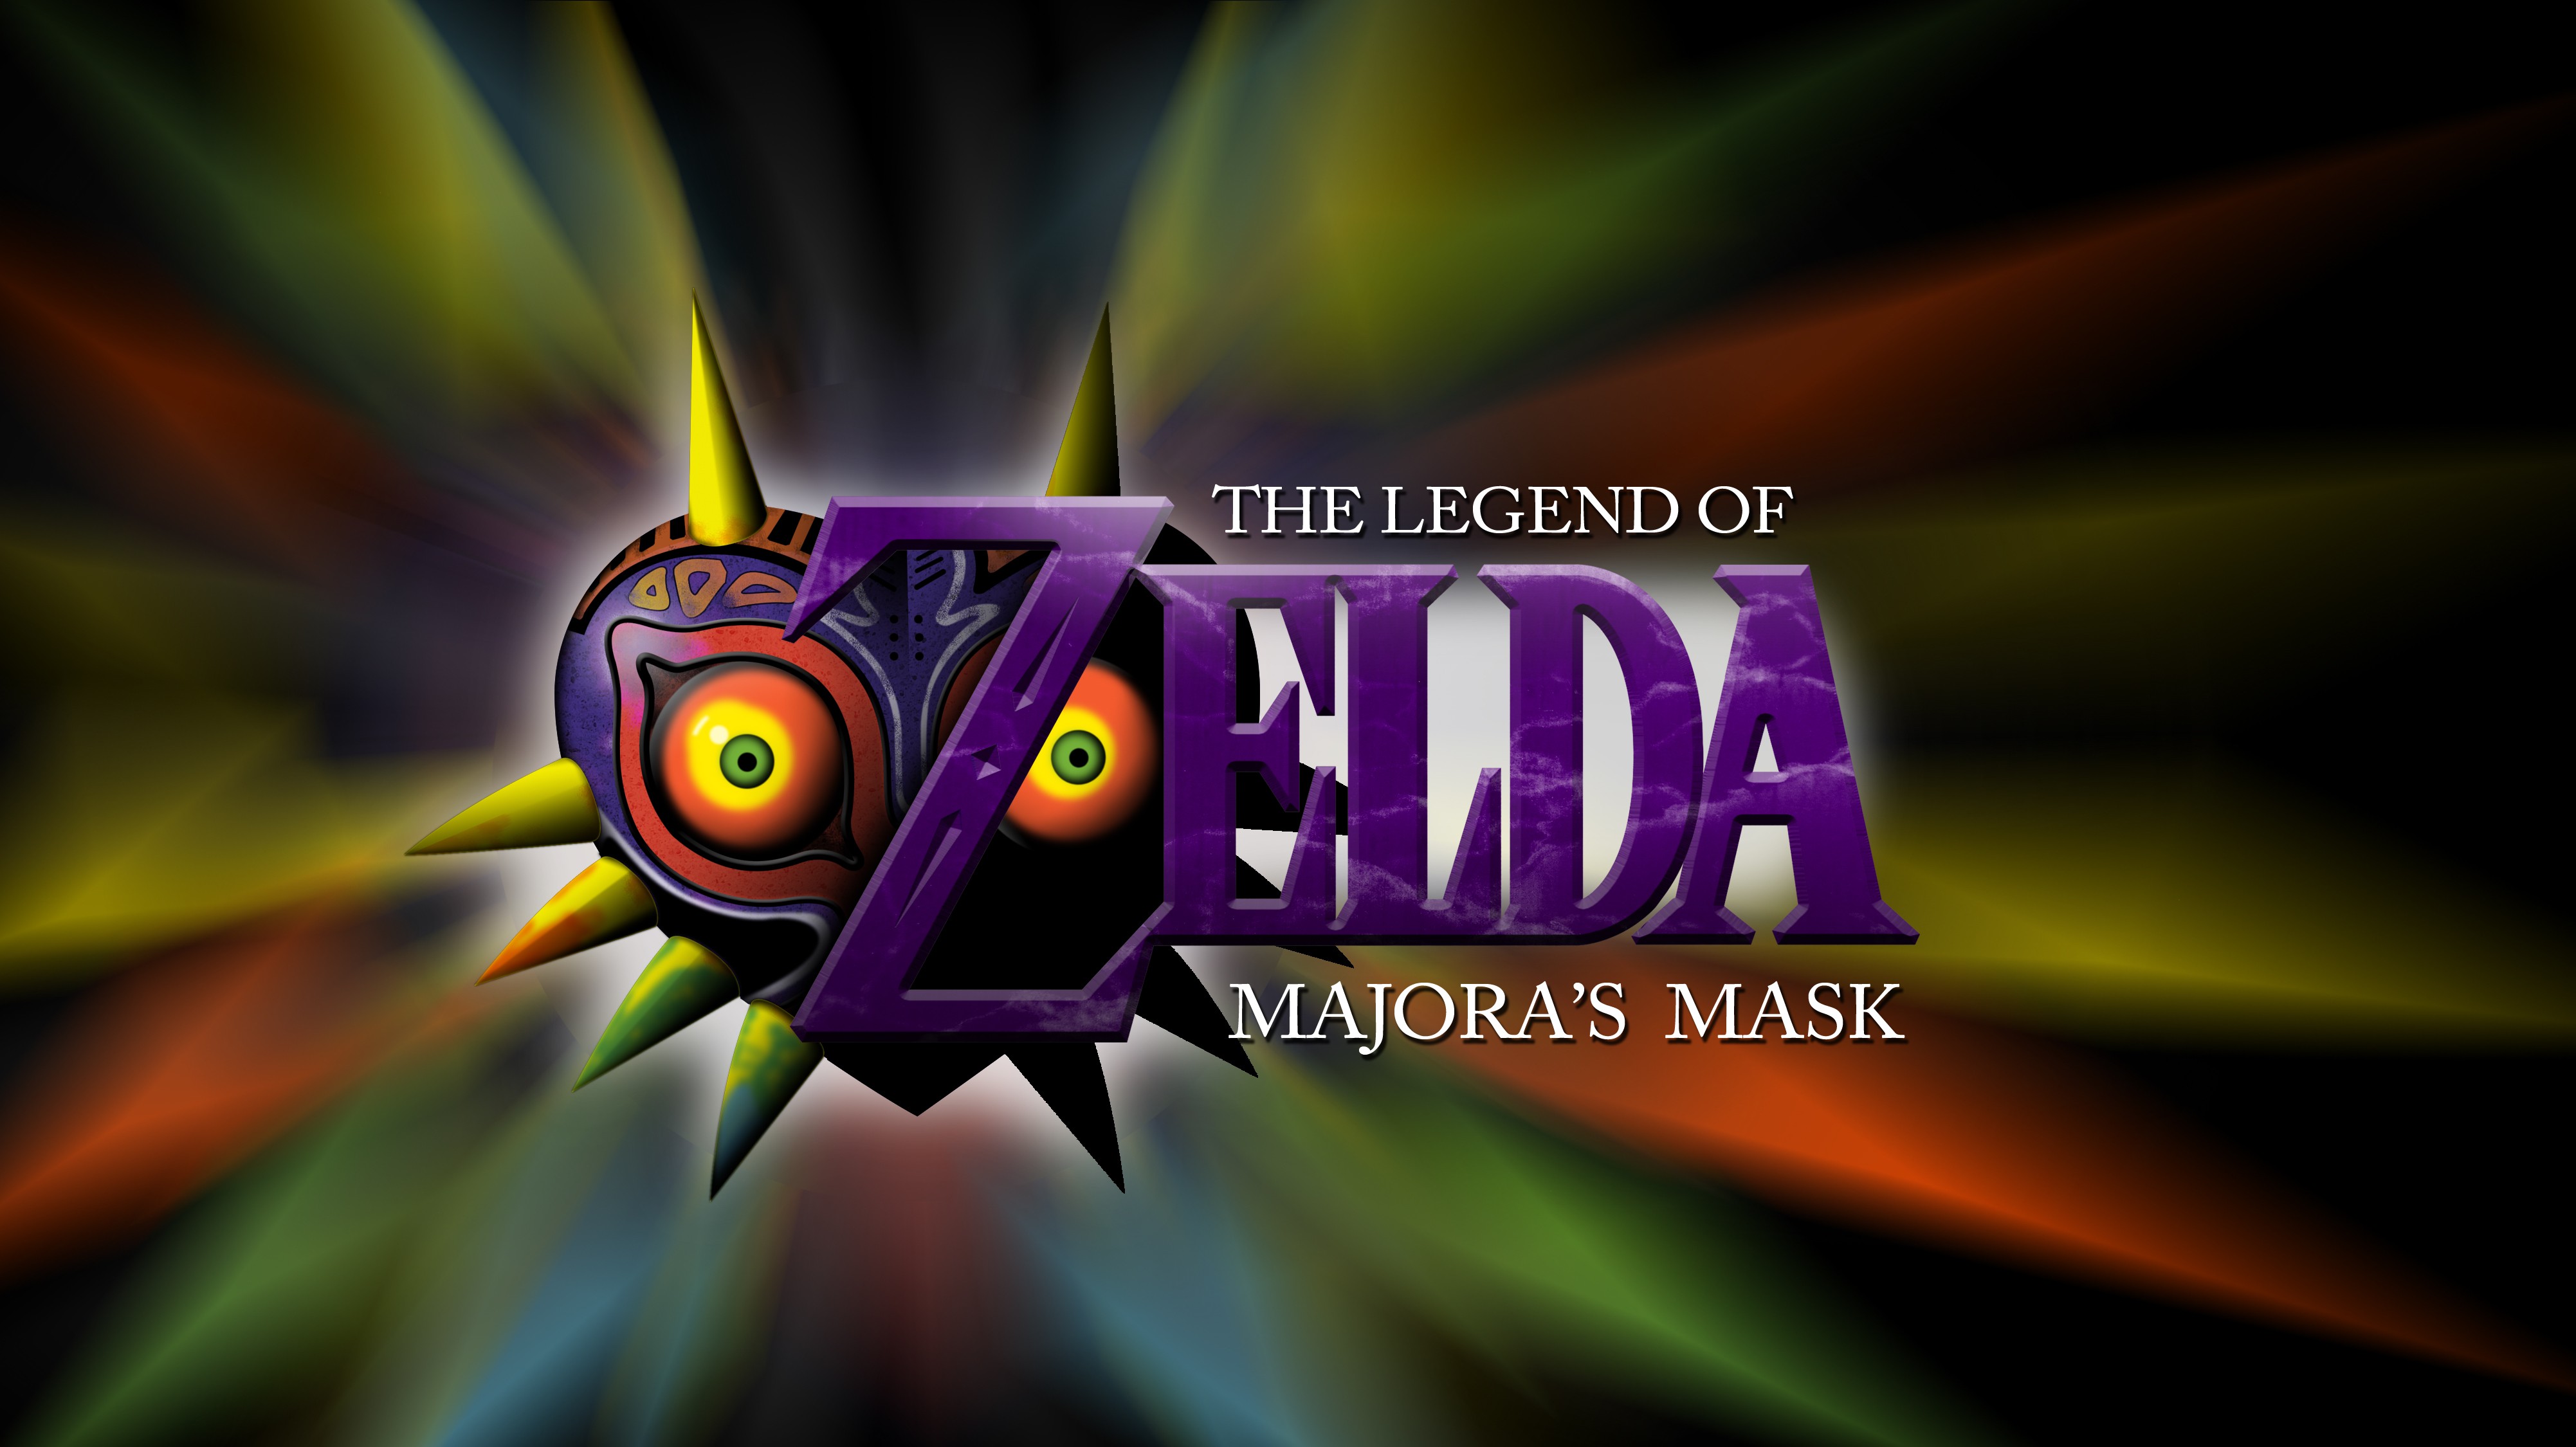 Zelda The Legend Of Zelda Video Games The Legend Of Zelda Majoras Mask 4005x2250